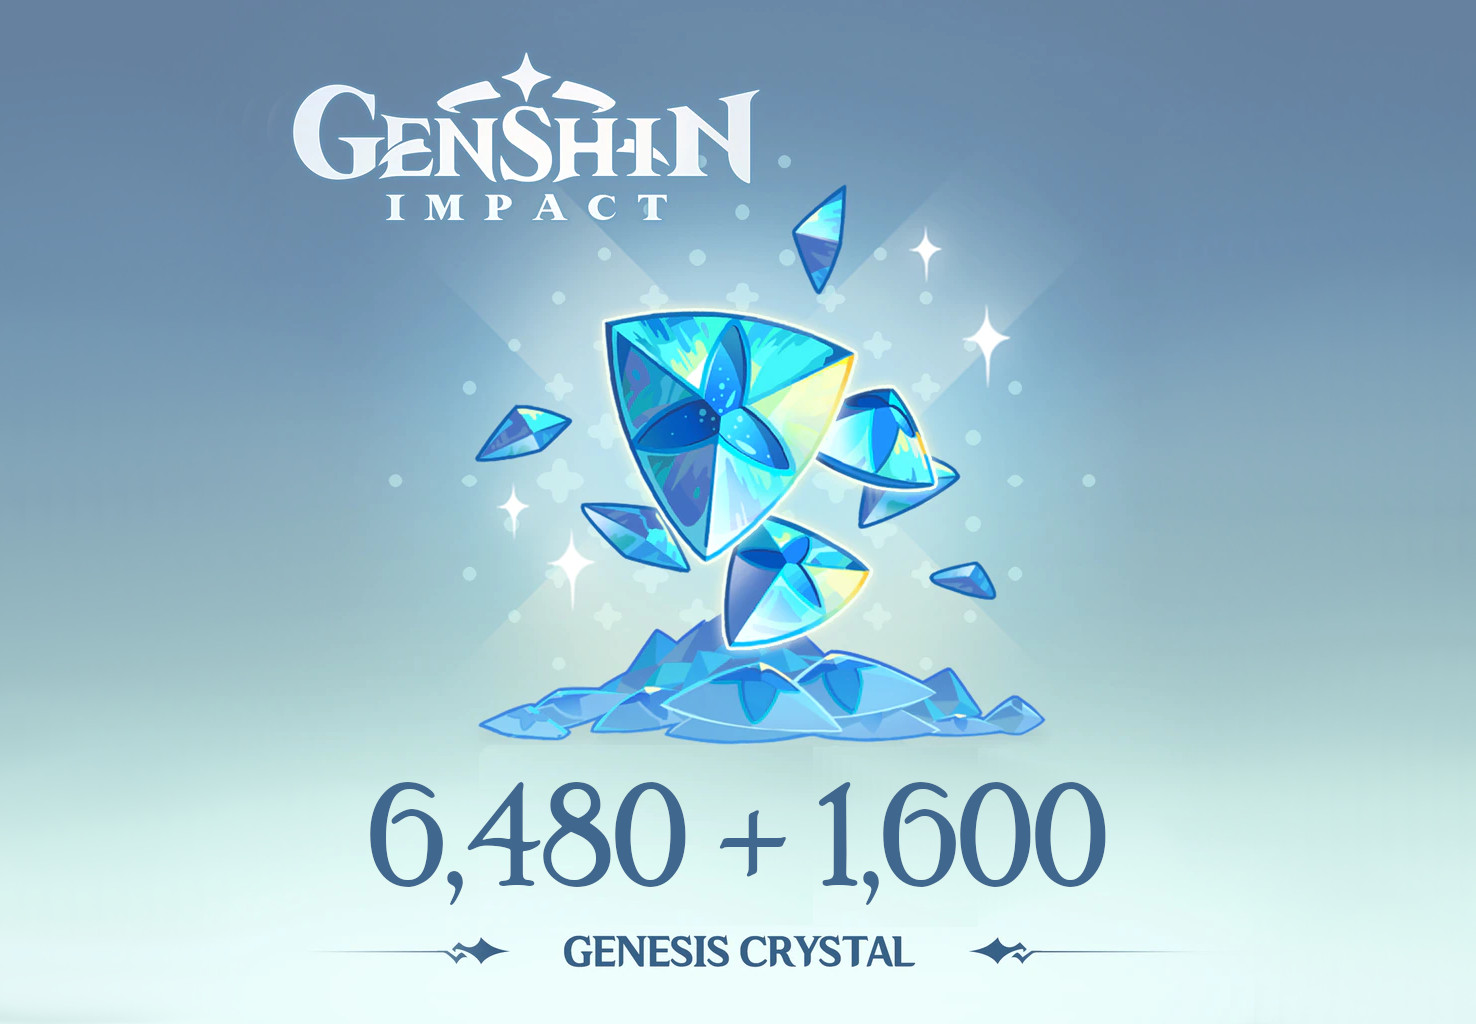 Genshin Impact - 6,480 + 1,600 Genesis Crystals Reidos Voucher [$ 107.29]